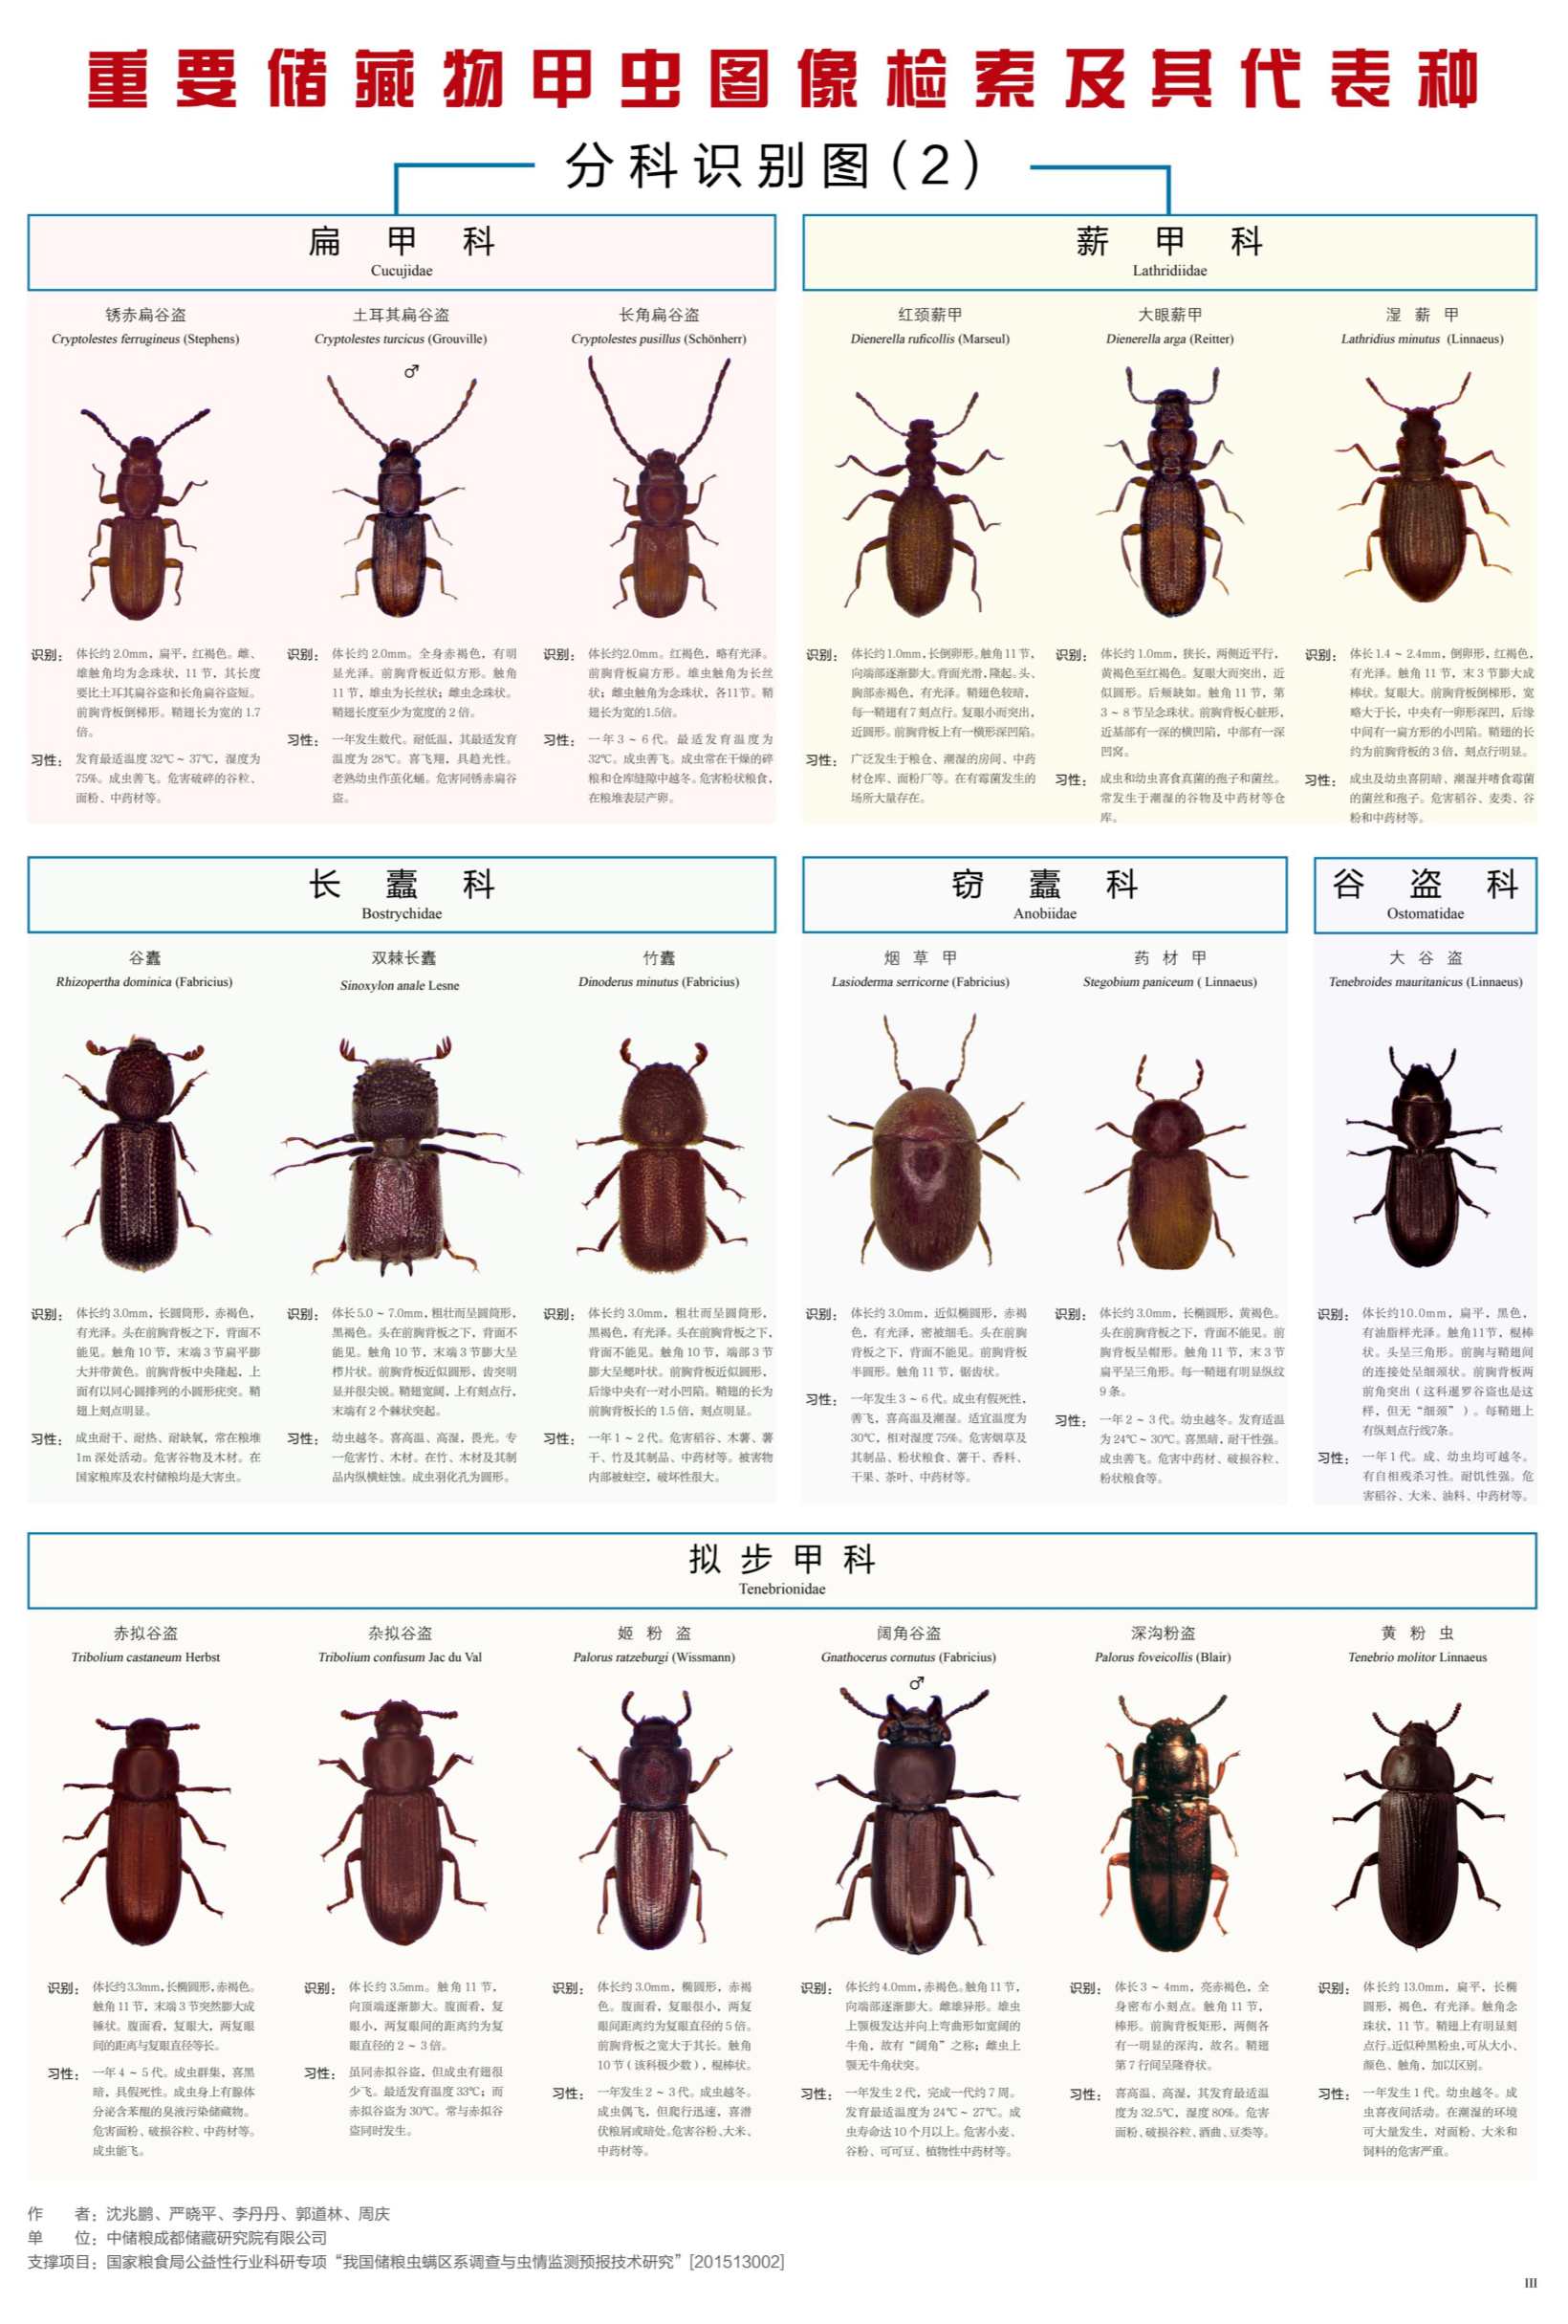 图文 《重要储藏物甲虫图像检索及其代表种》图谱_3_副本.jpg